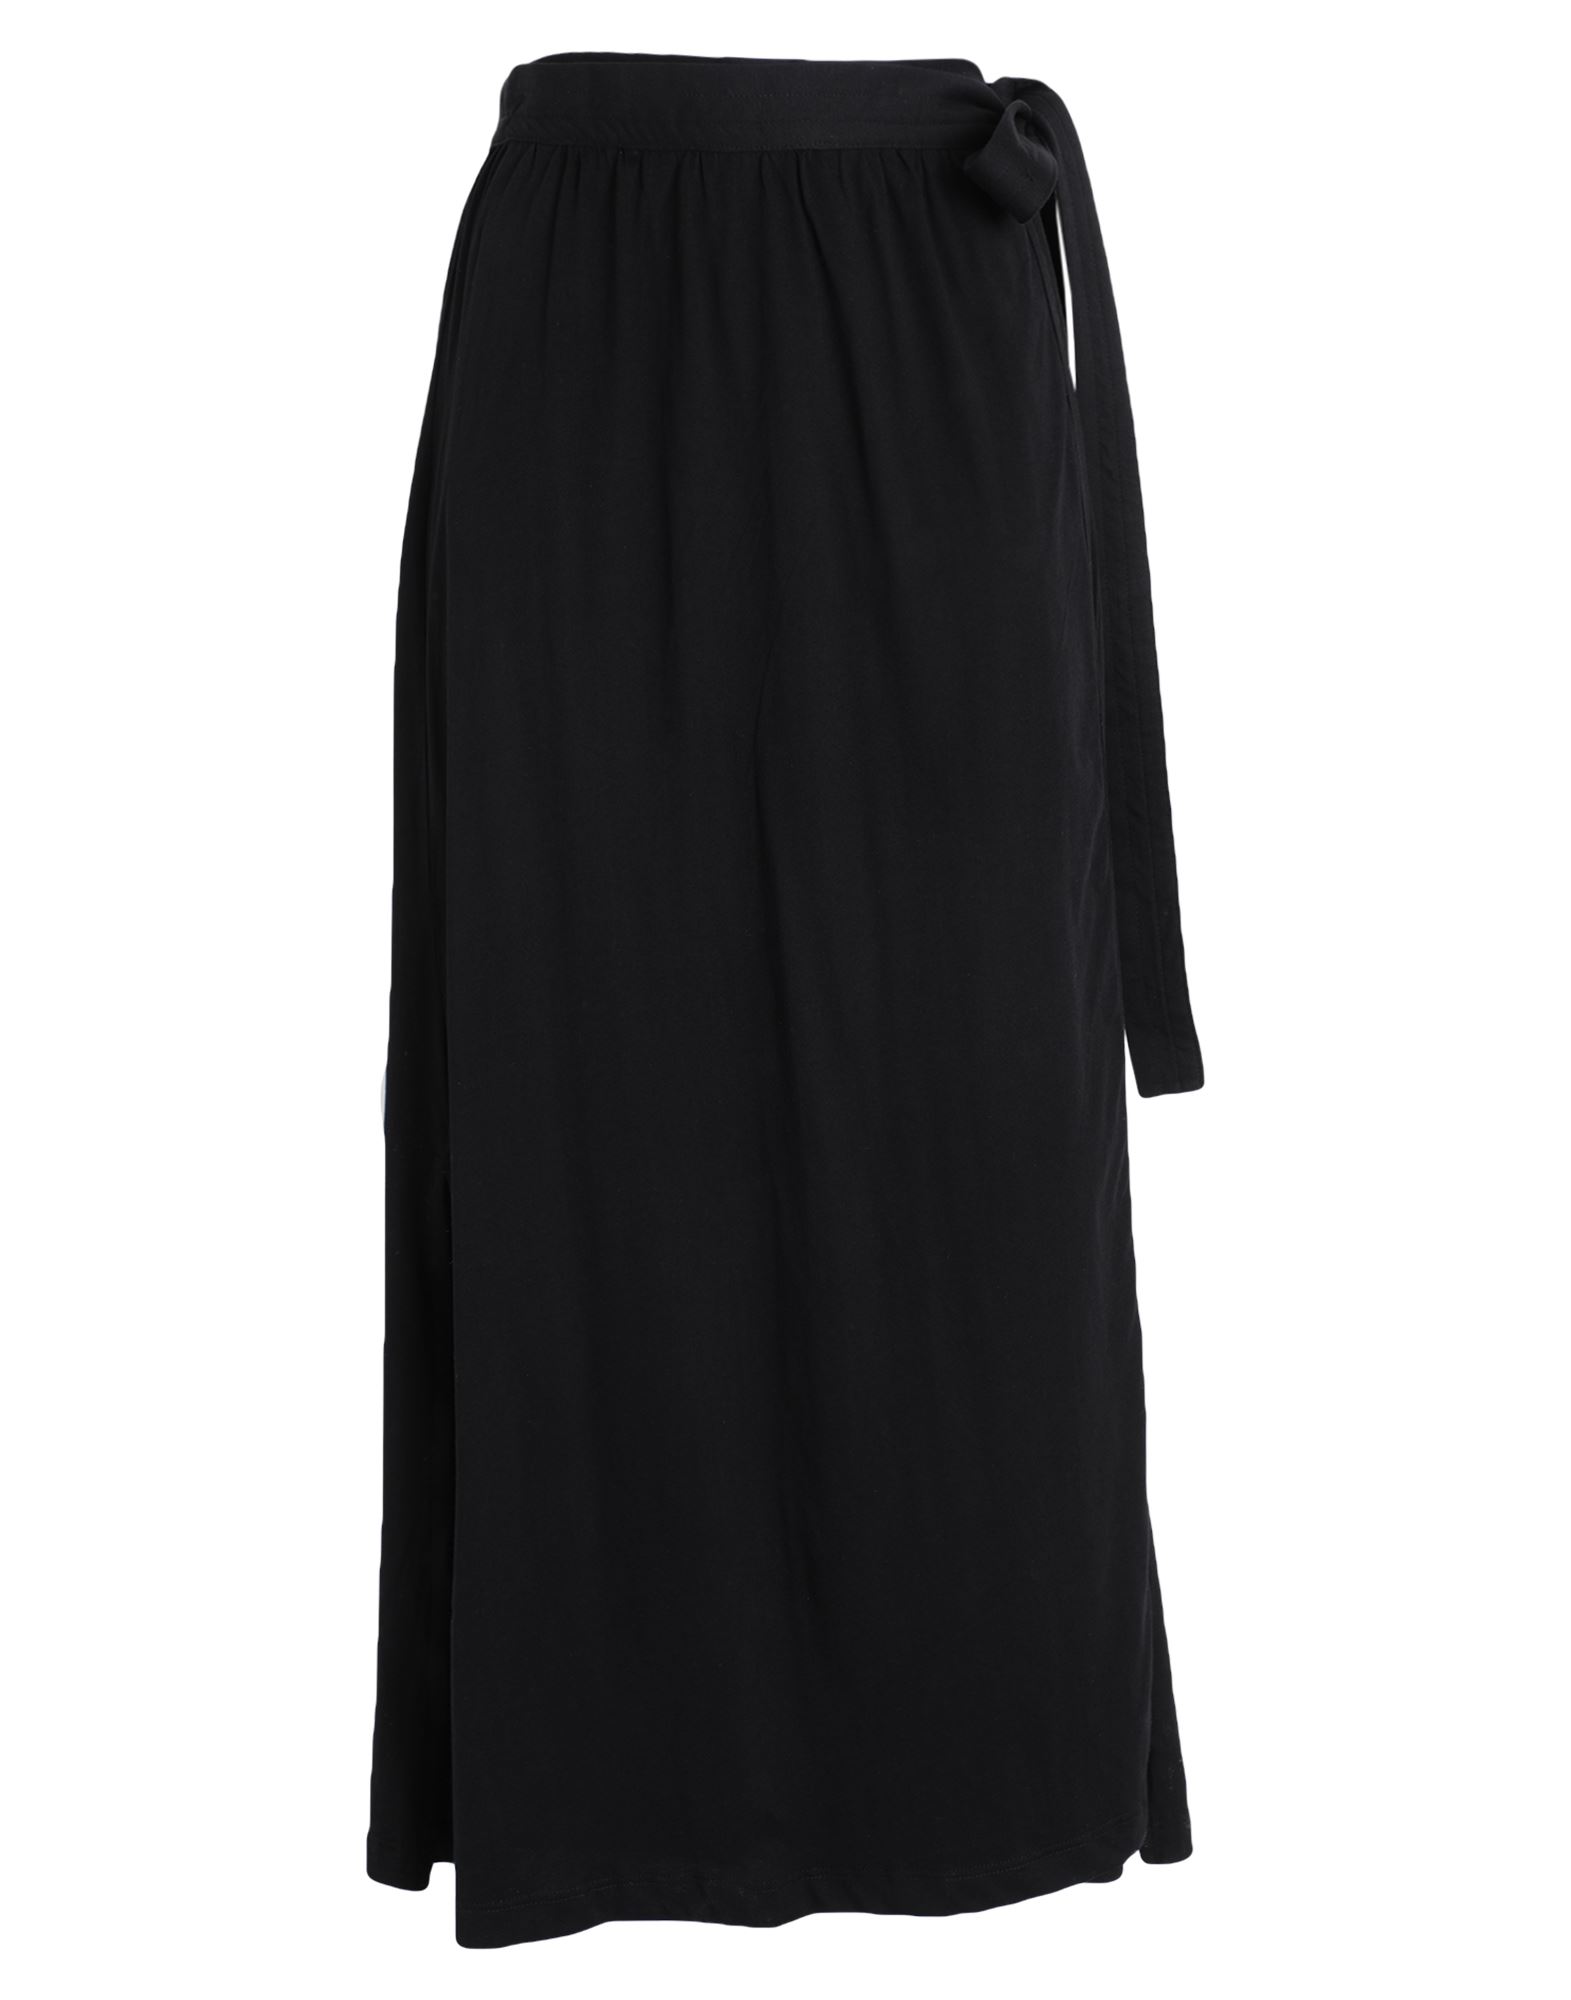 Arket Long Skirts In Black